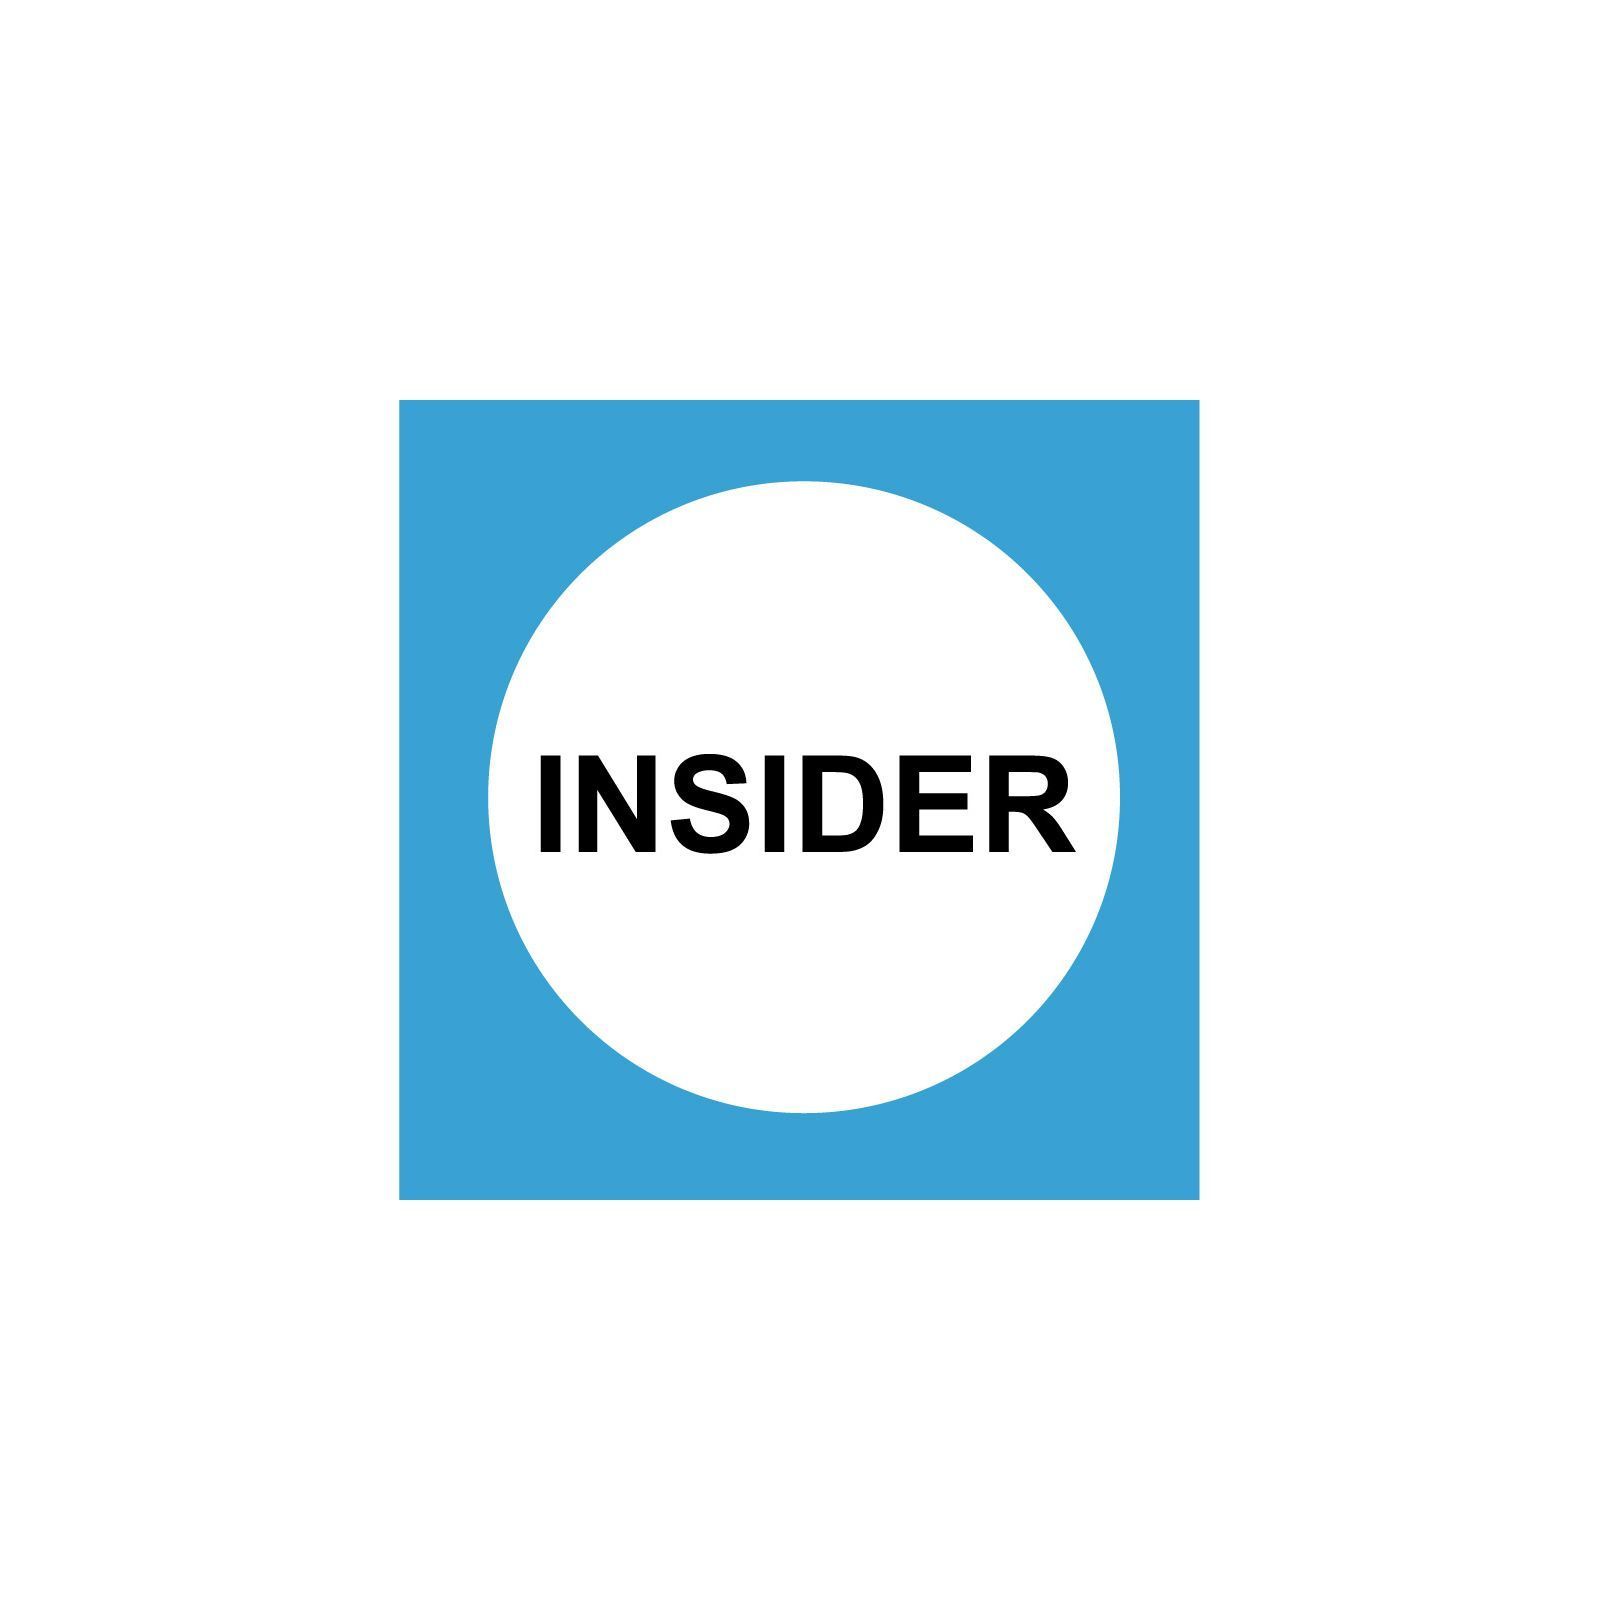 Insider - logo